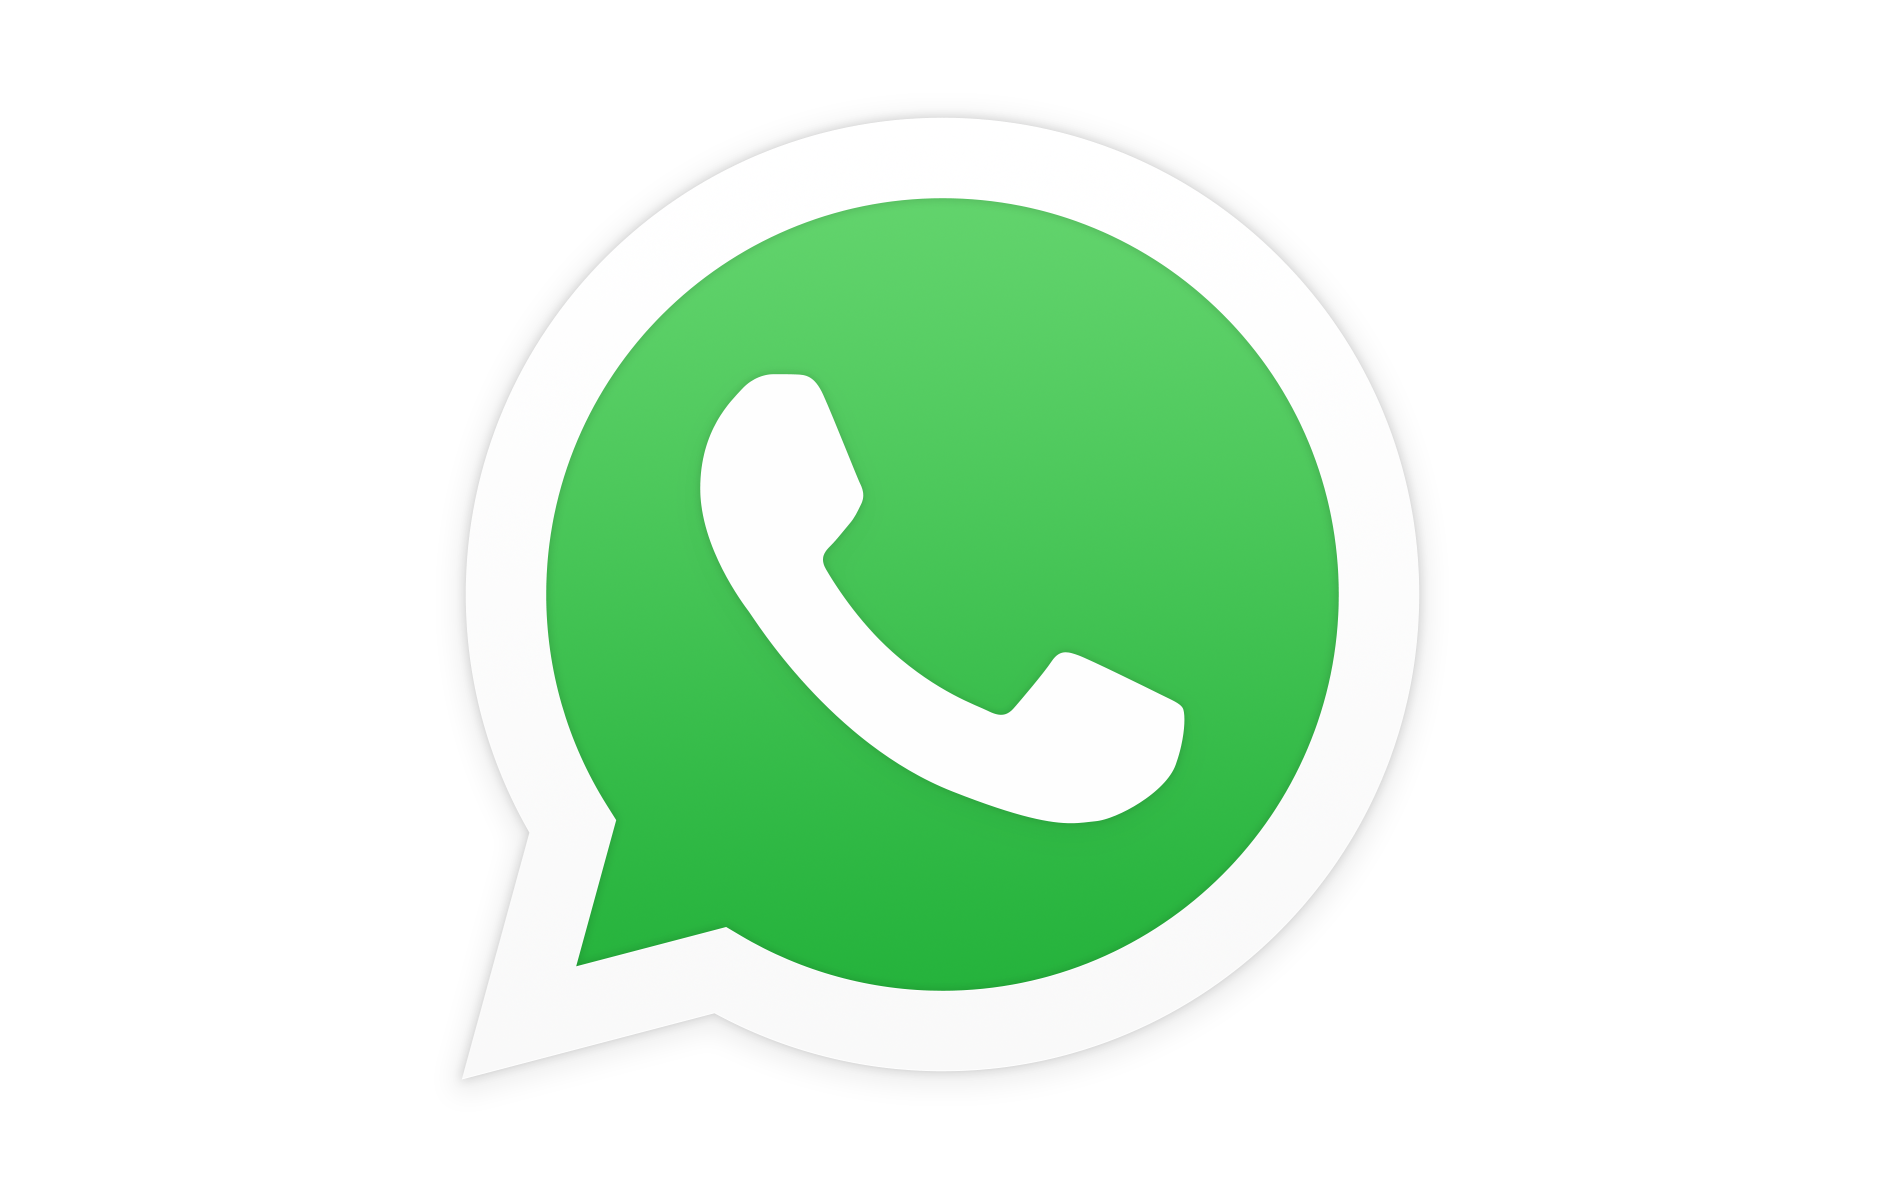 WhatsApp - Bing images